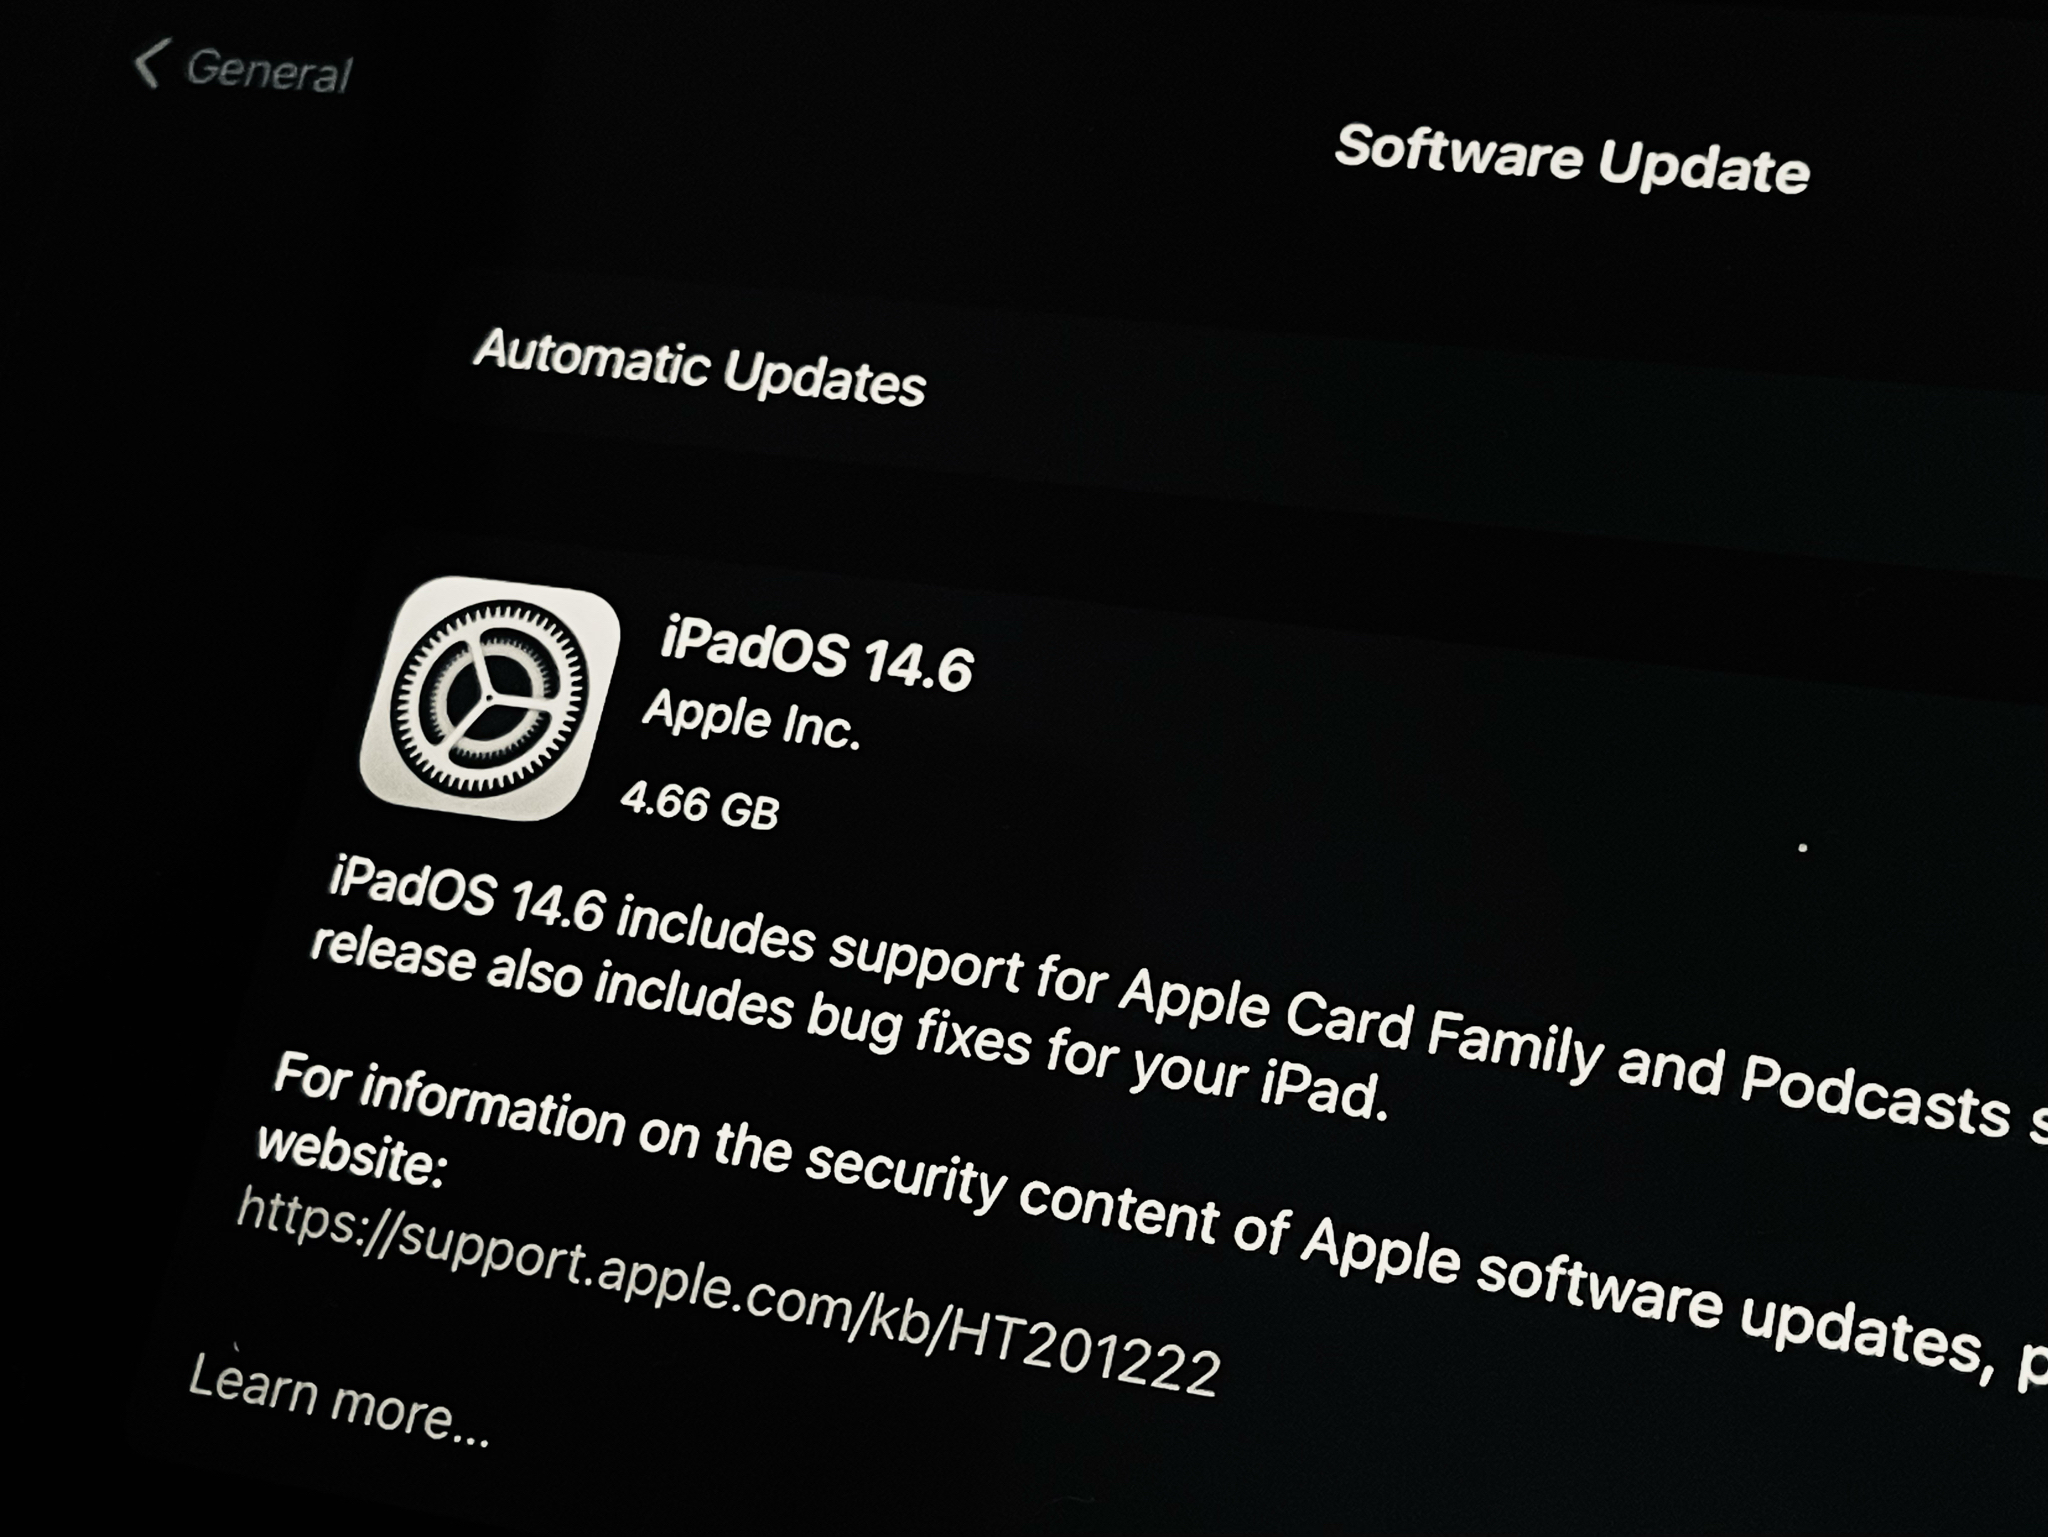 Apple phát hành bản RC cho iOS 14.6, iPadOS 14.6, tvOS 14.6 và watchOS 7.5.  Anh em